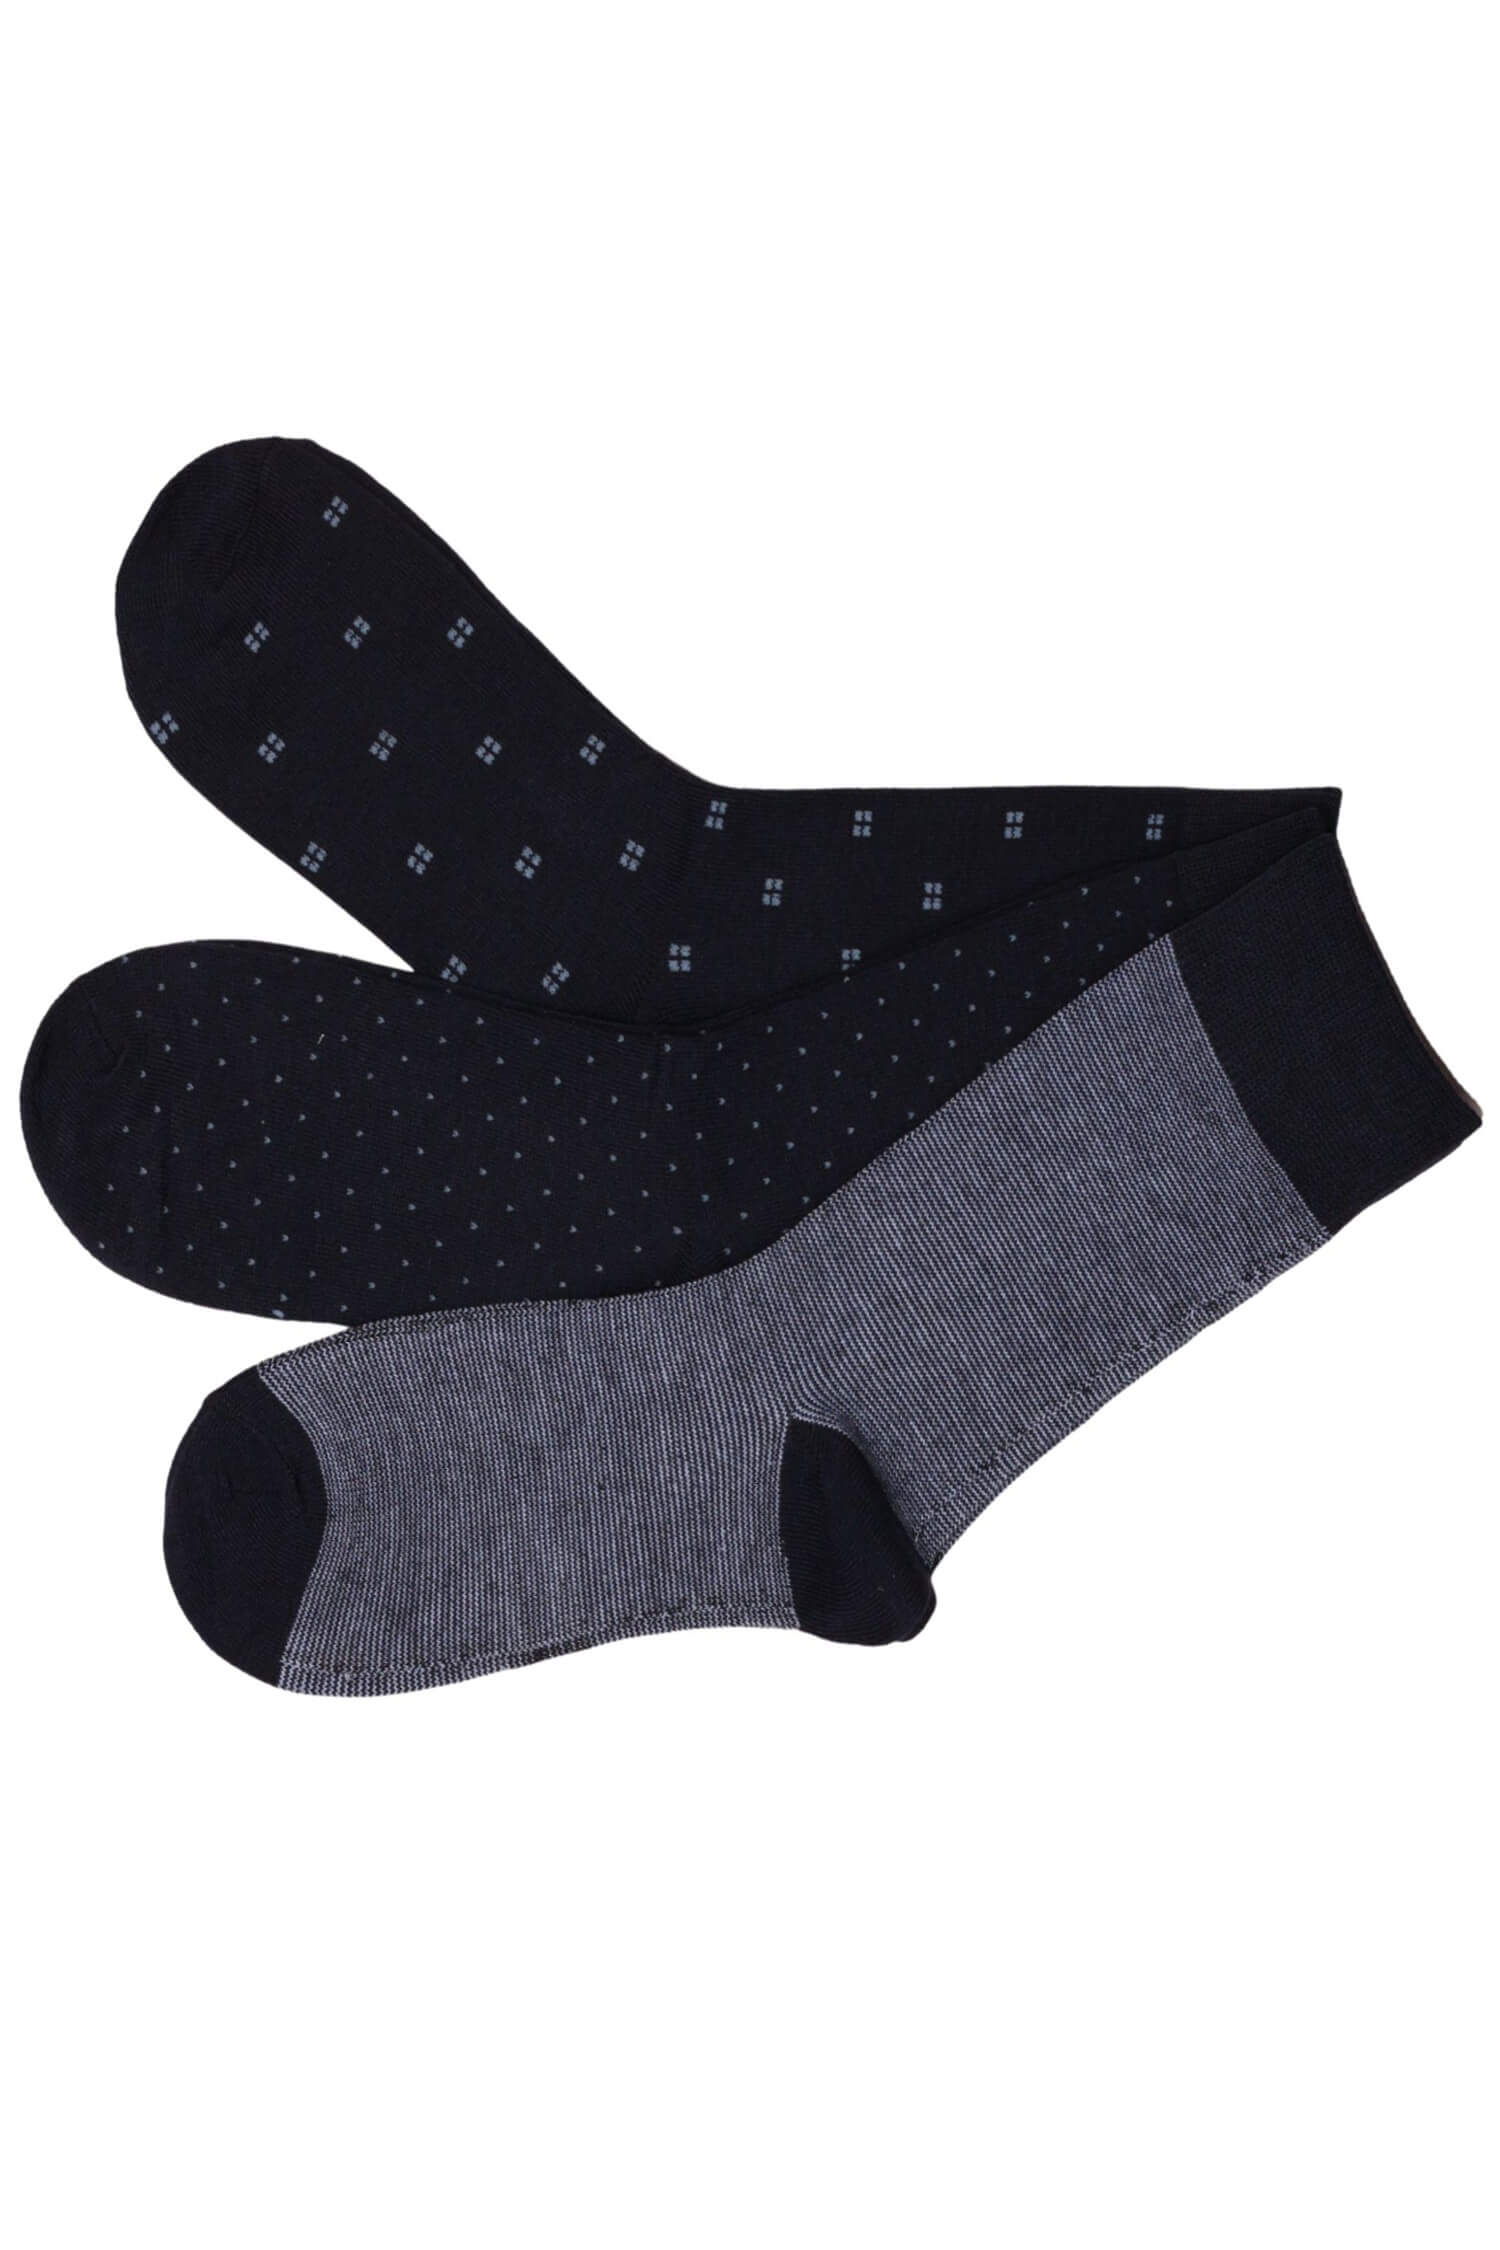 Pánské vysoké ponožky bavlna - 3 páry 39-42 vícebarevná